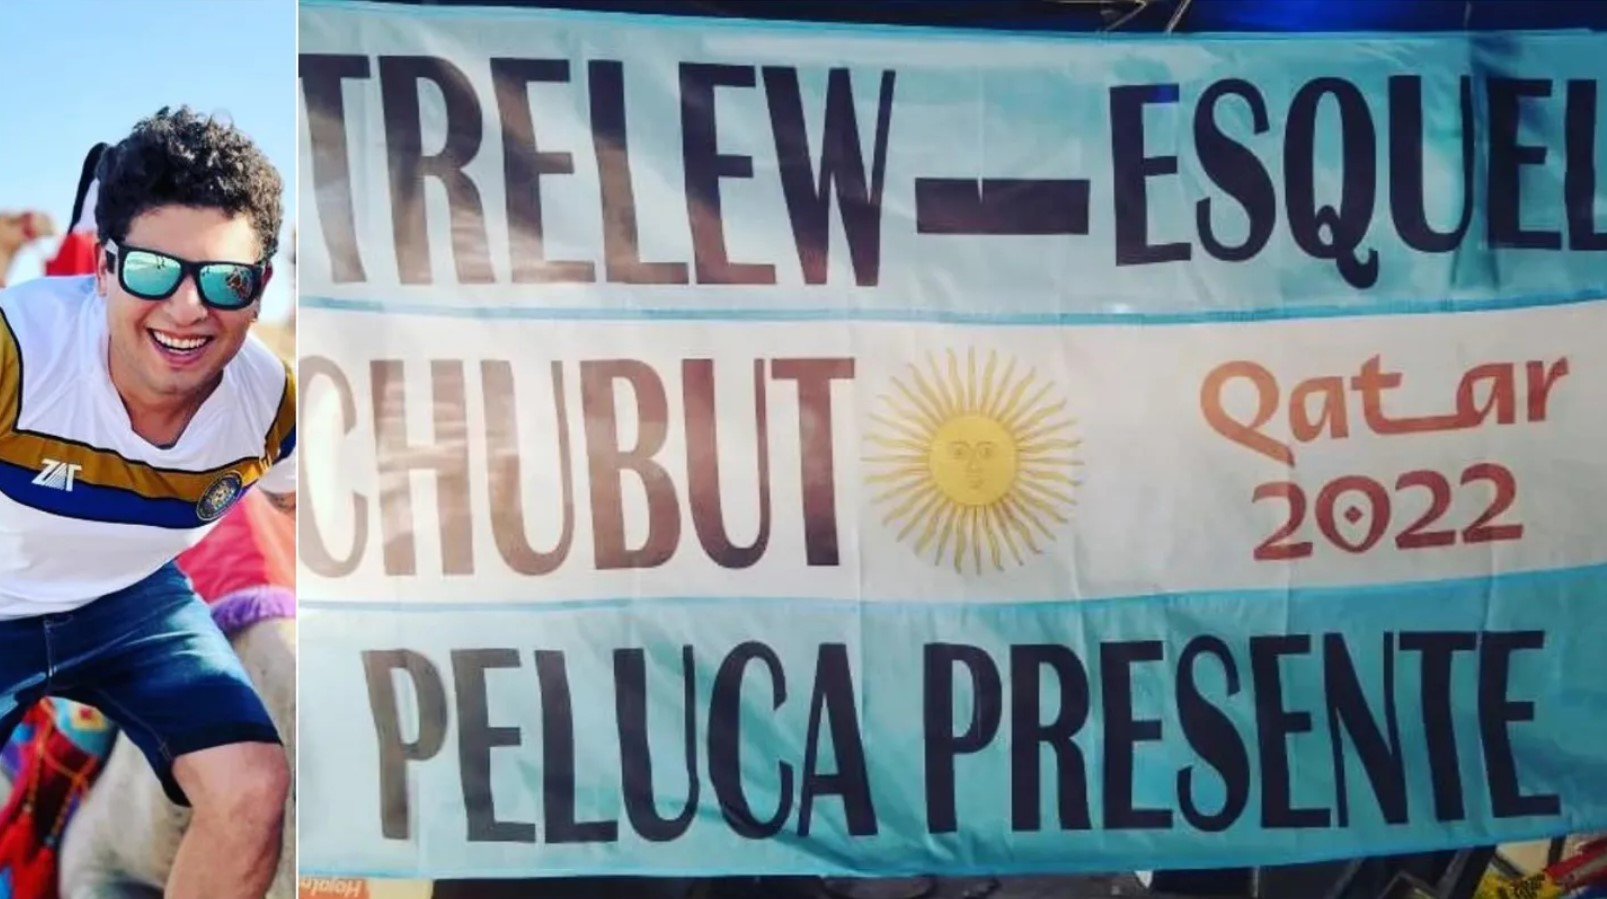 Pide comida y duerme en la calle: la odisea de un fanático argentino en el Mundial Qatar 2022